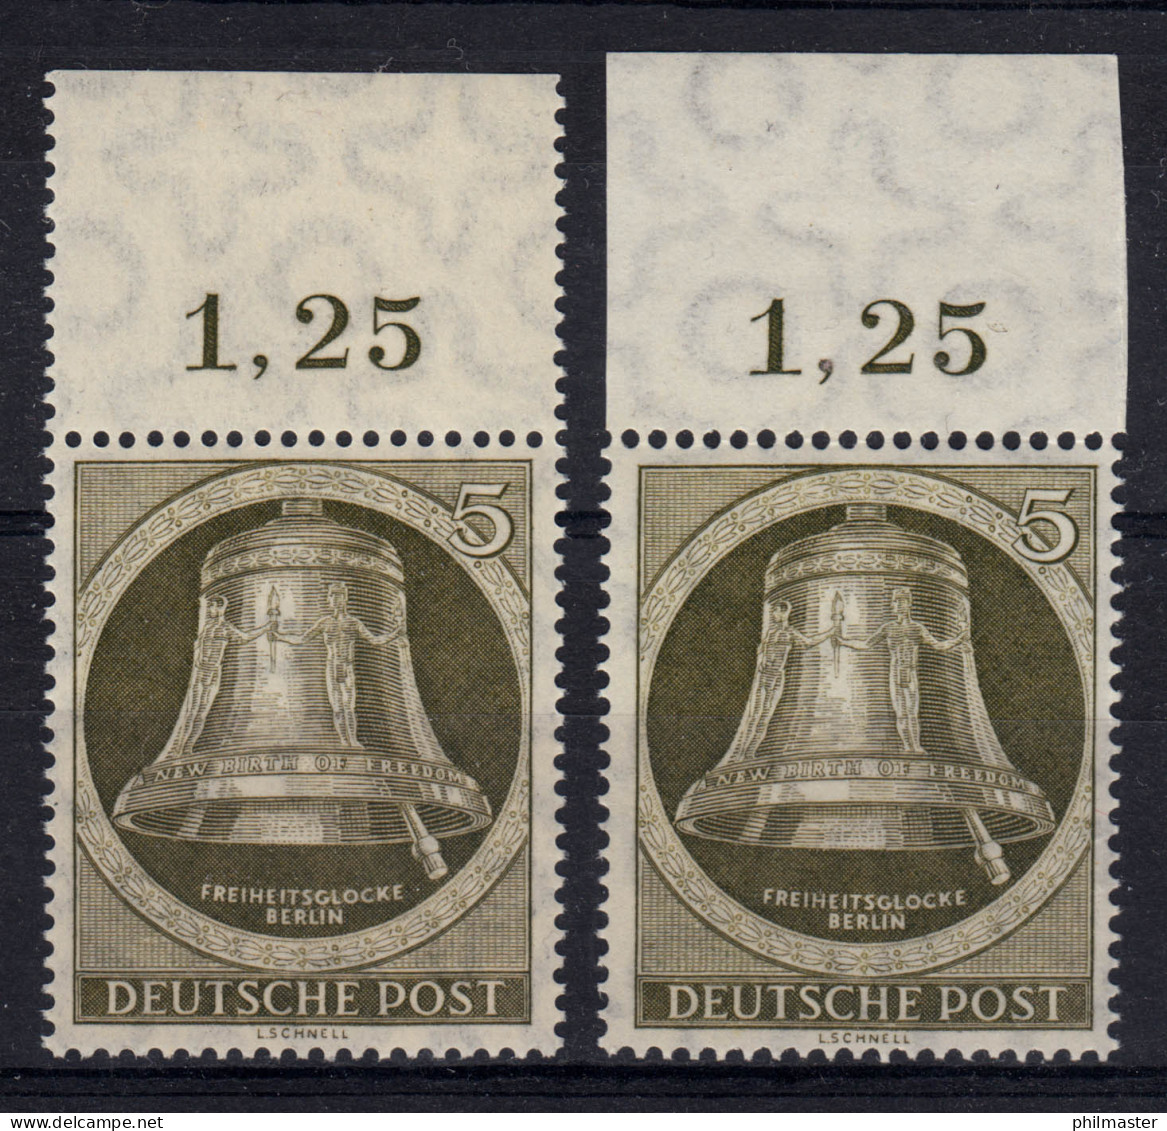 82 OR Gocke Klöppel Rechts, Zwei Marken Vom OR Duchgezähnt Bzw. Ndgz., Beide ** - Unused Stamps